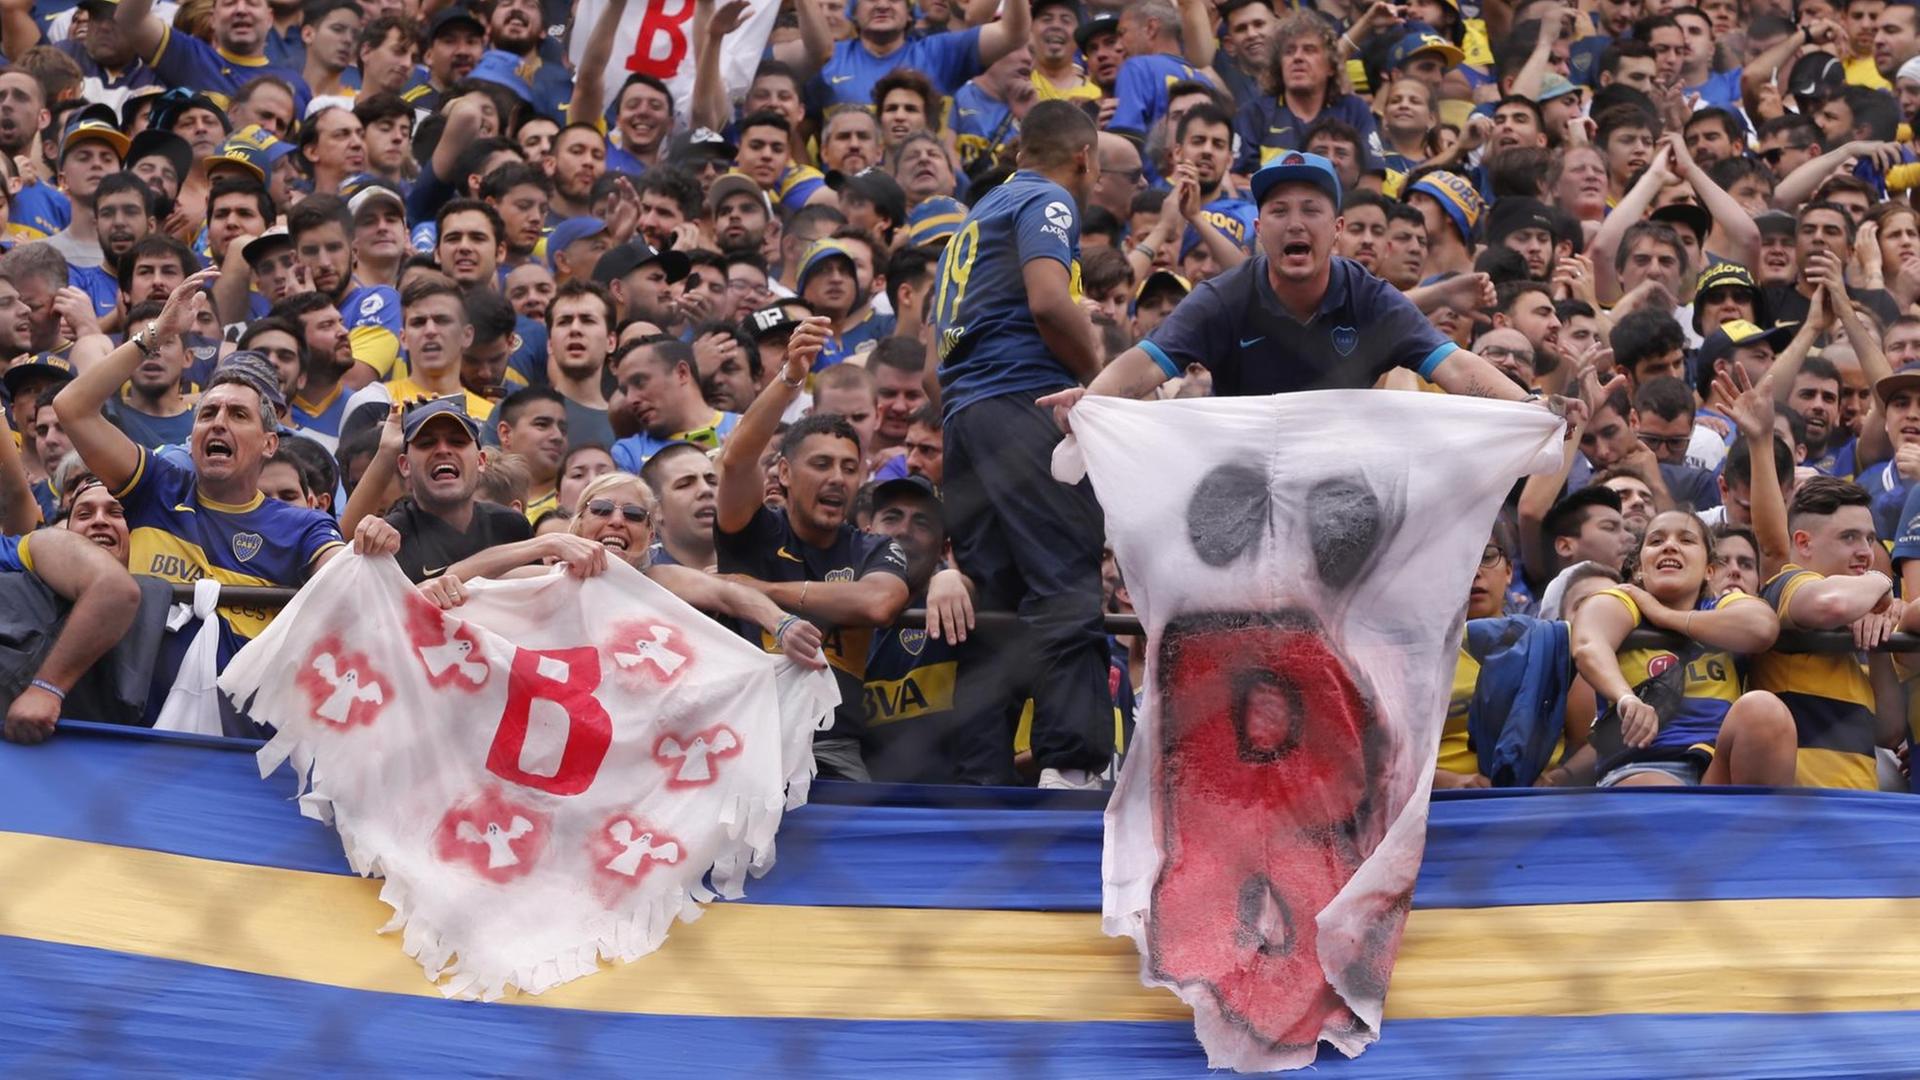 Fans von Boca Juniors halten vor dem Spiel Transparente mit Geistern. Der «Geist der zweiten Liga (B)» ist eine Erinnerung an den Abstieg von River Plate 2011.